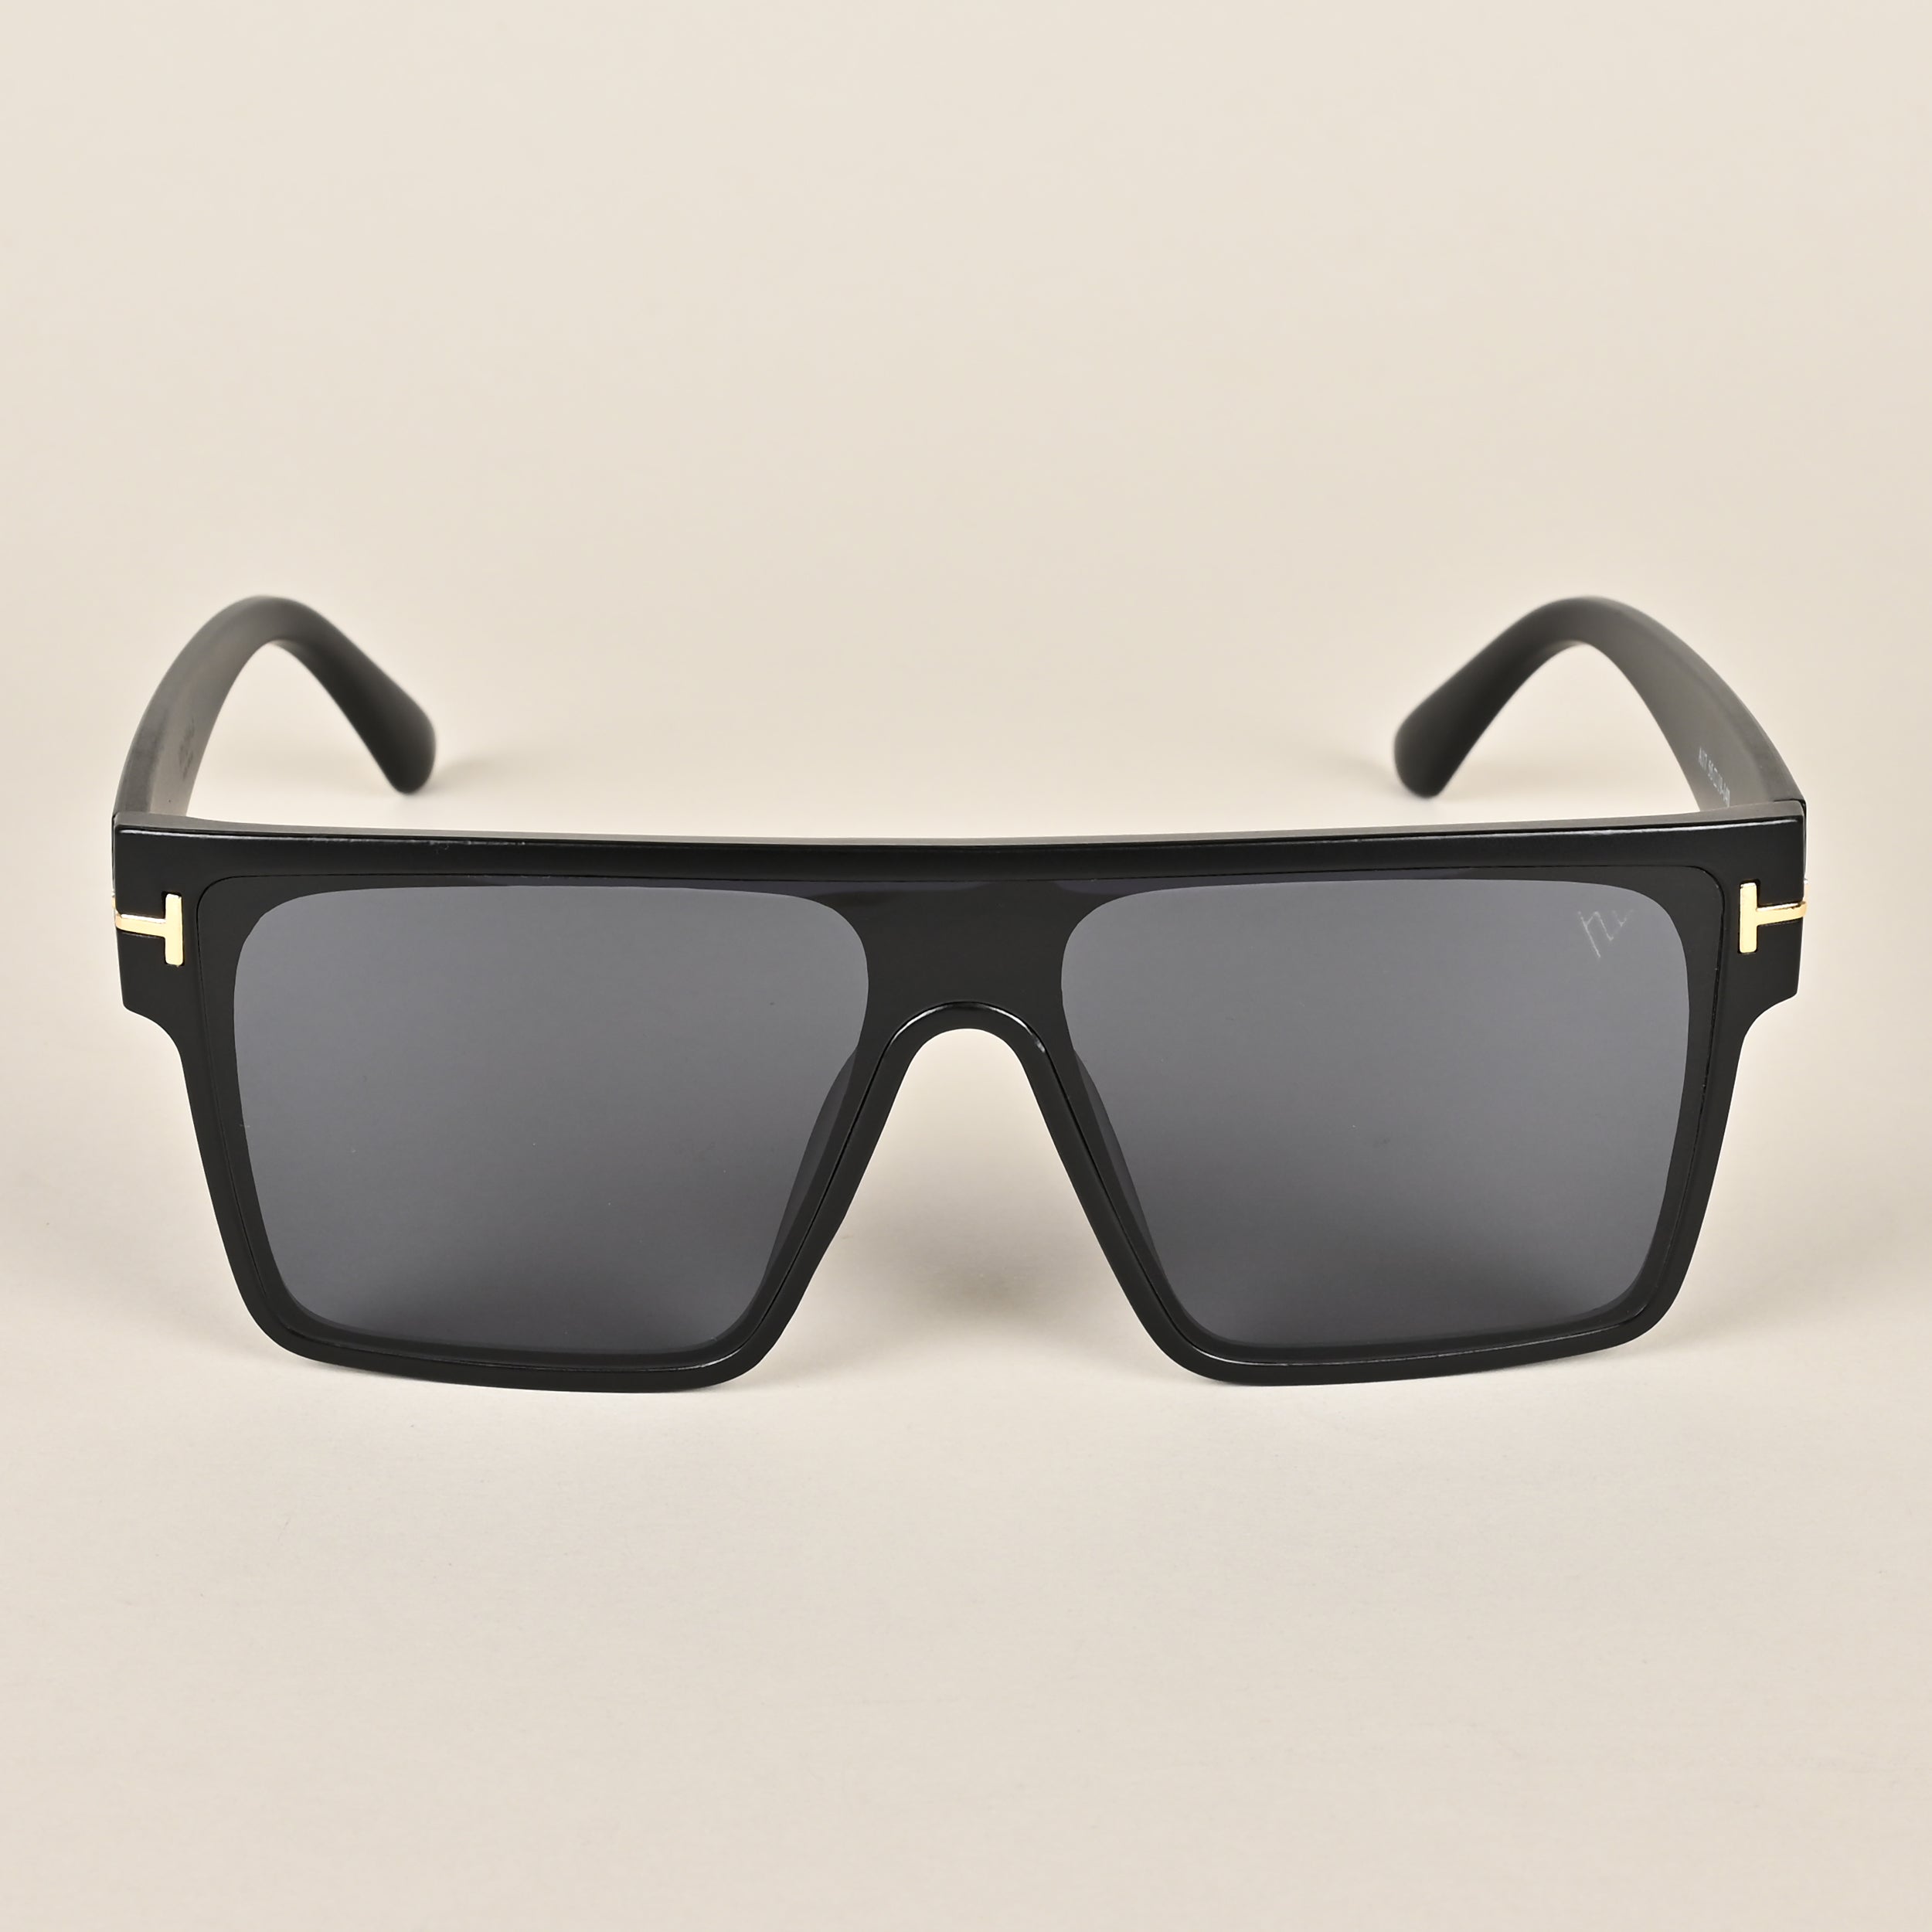 Voyage Black Wayfarer Sunglasses (A17MG3935)